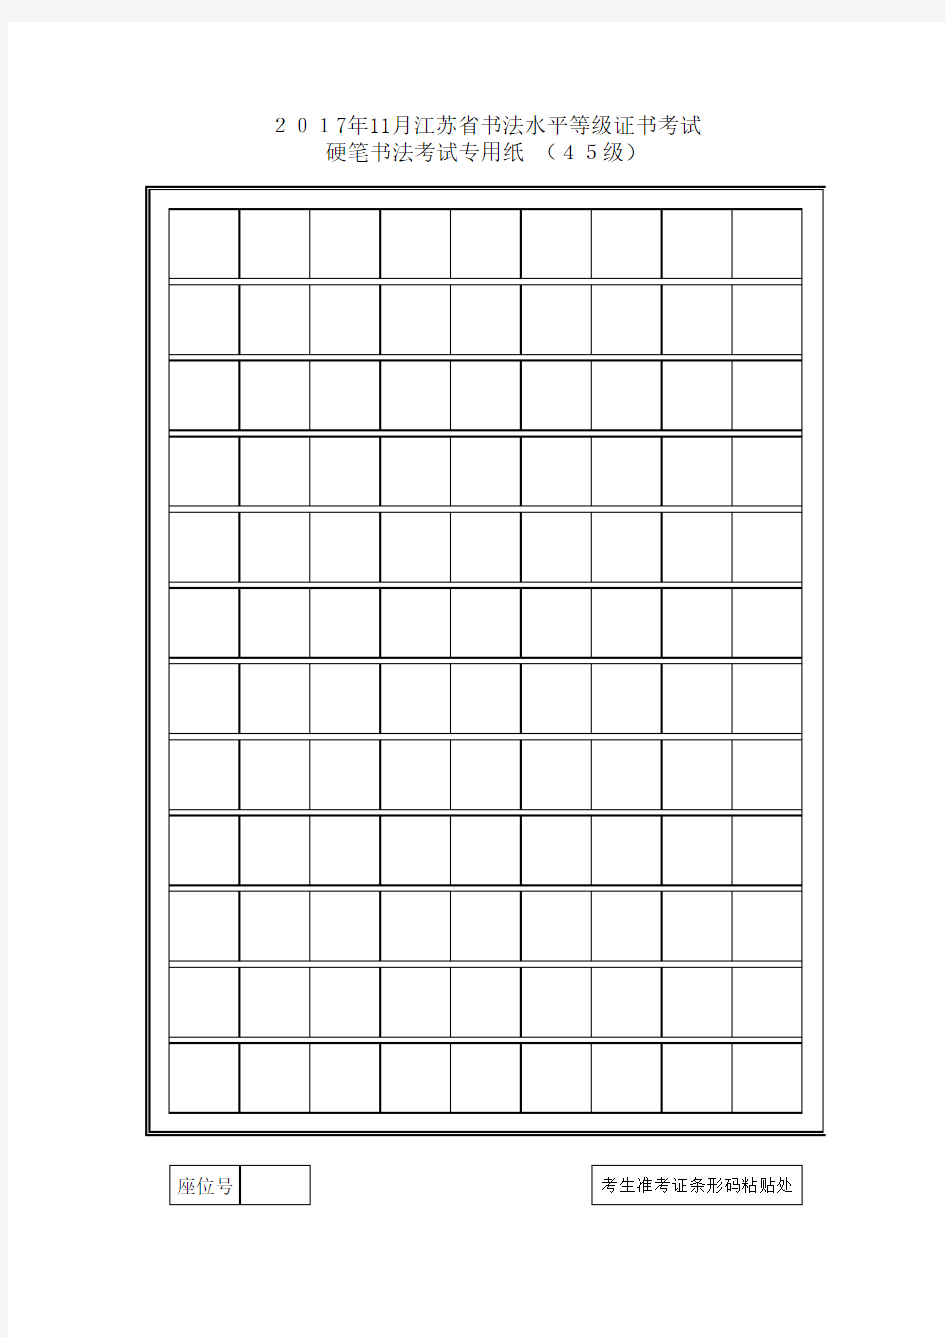 江苏省硬笔书法考试专用纸(1_10级)